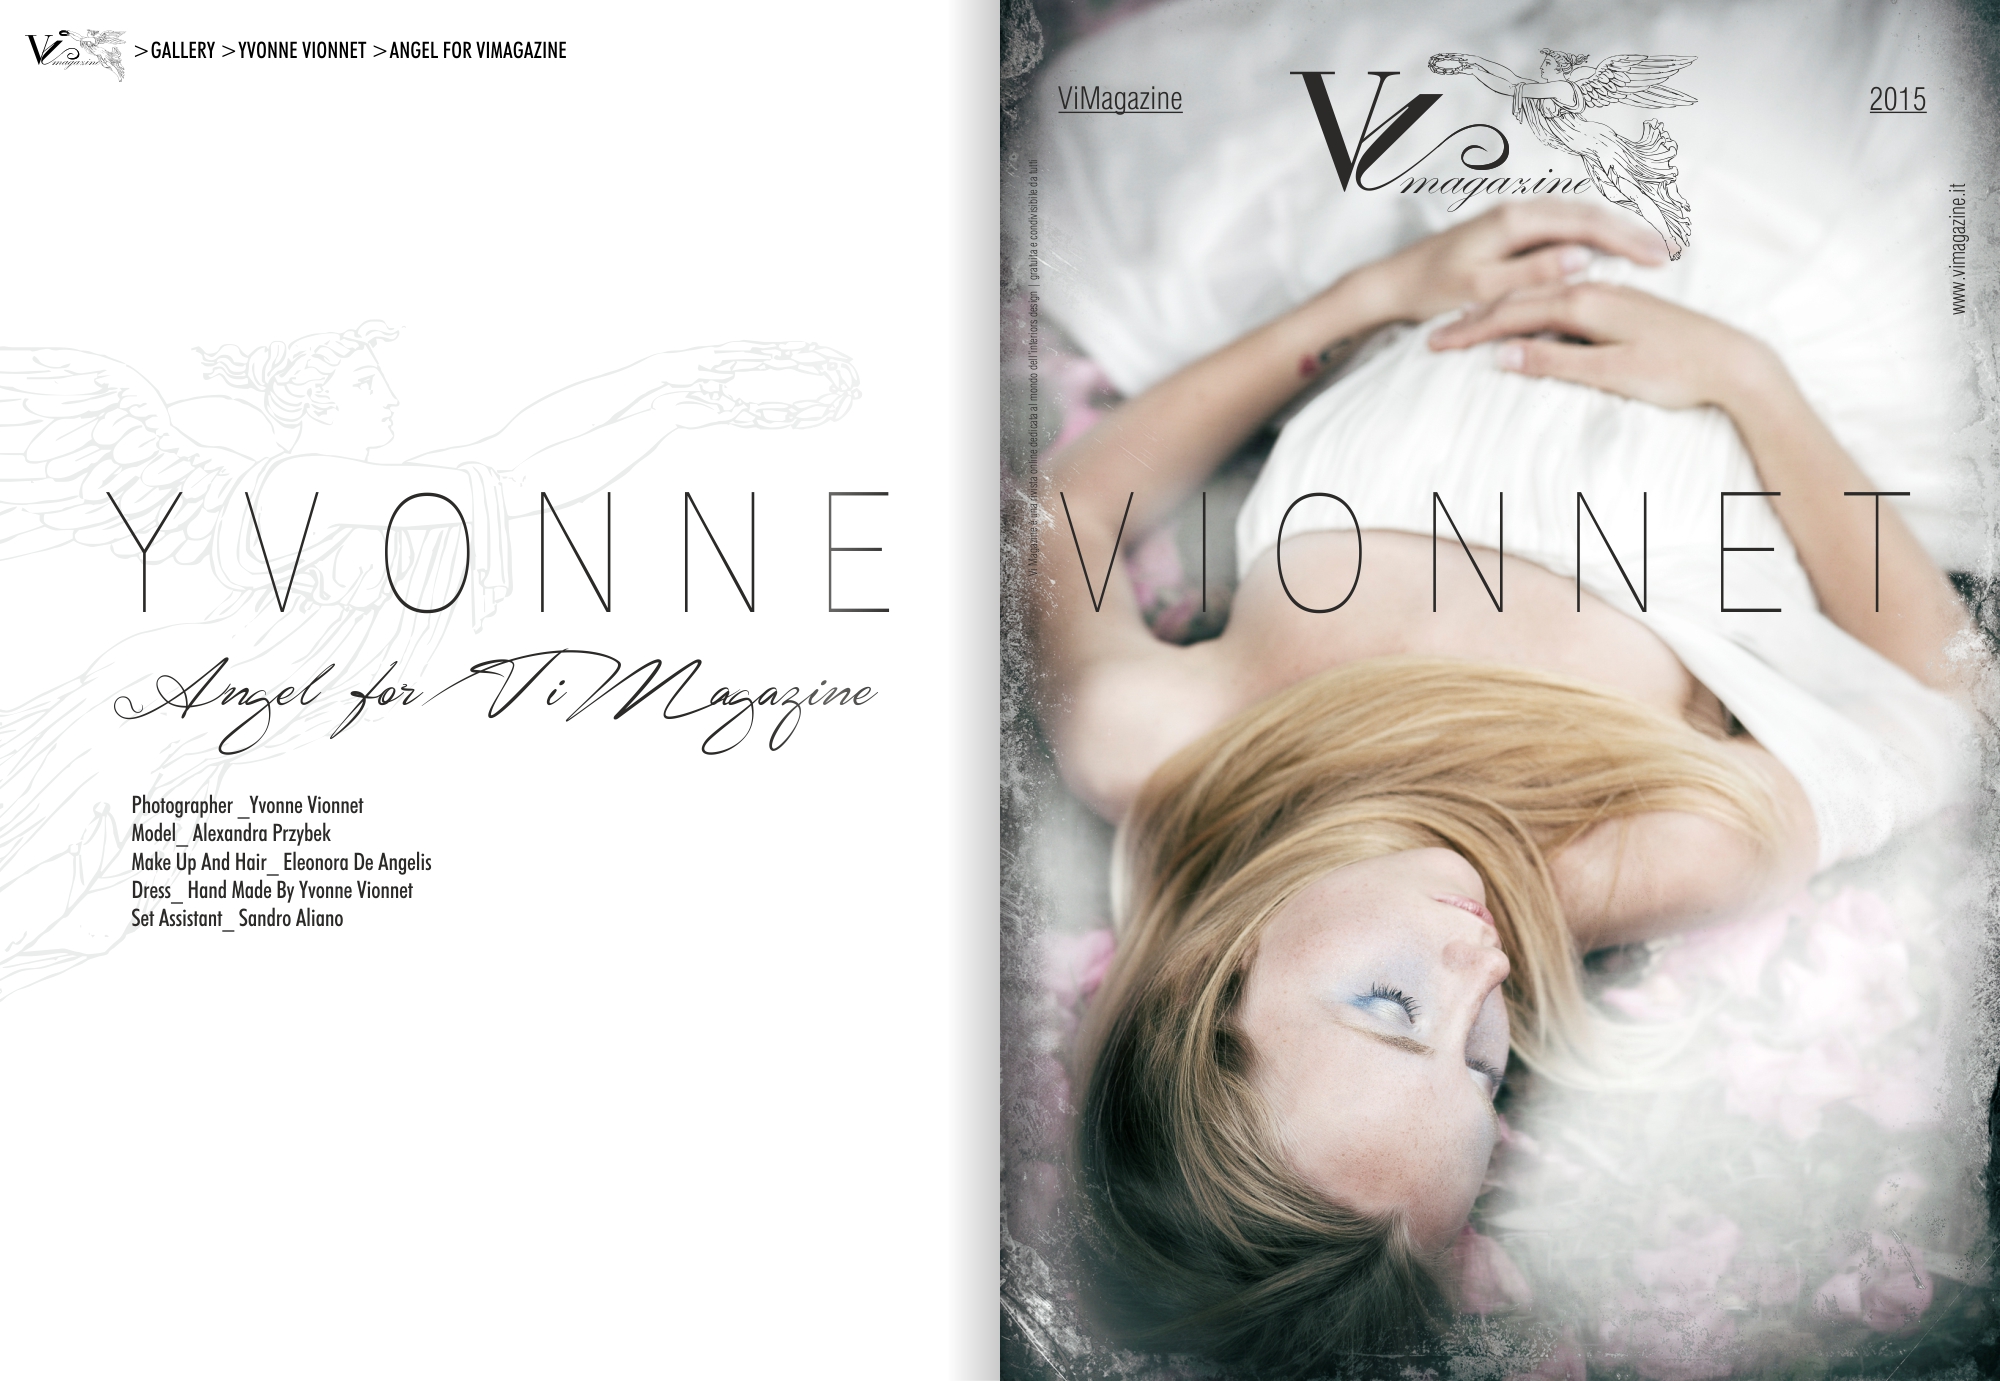 ViMagazine Story MODA YVONNE VIONNET